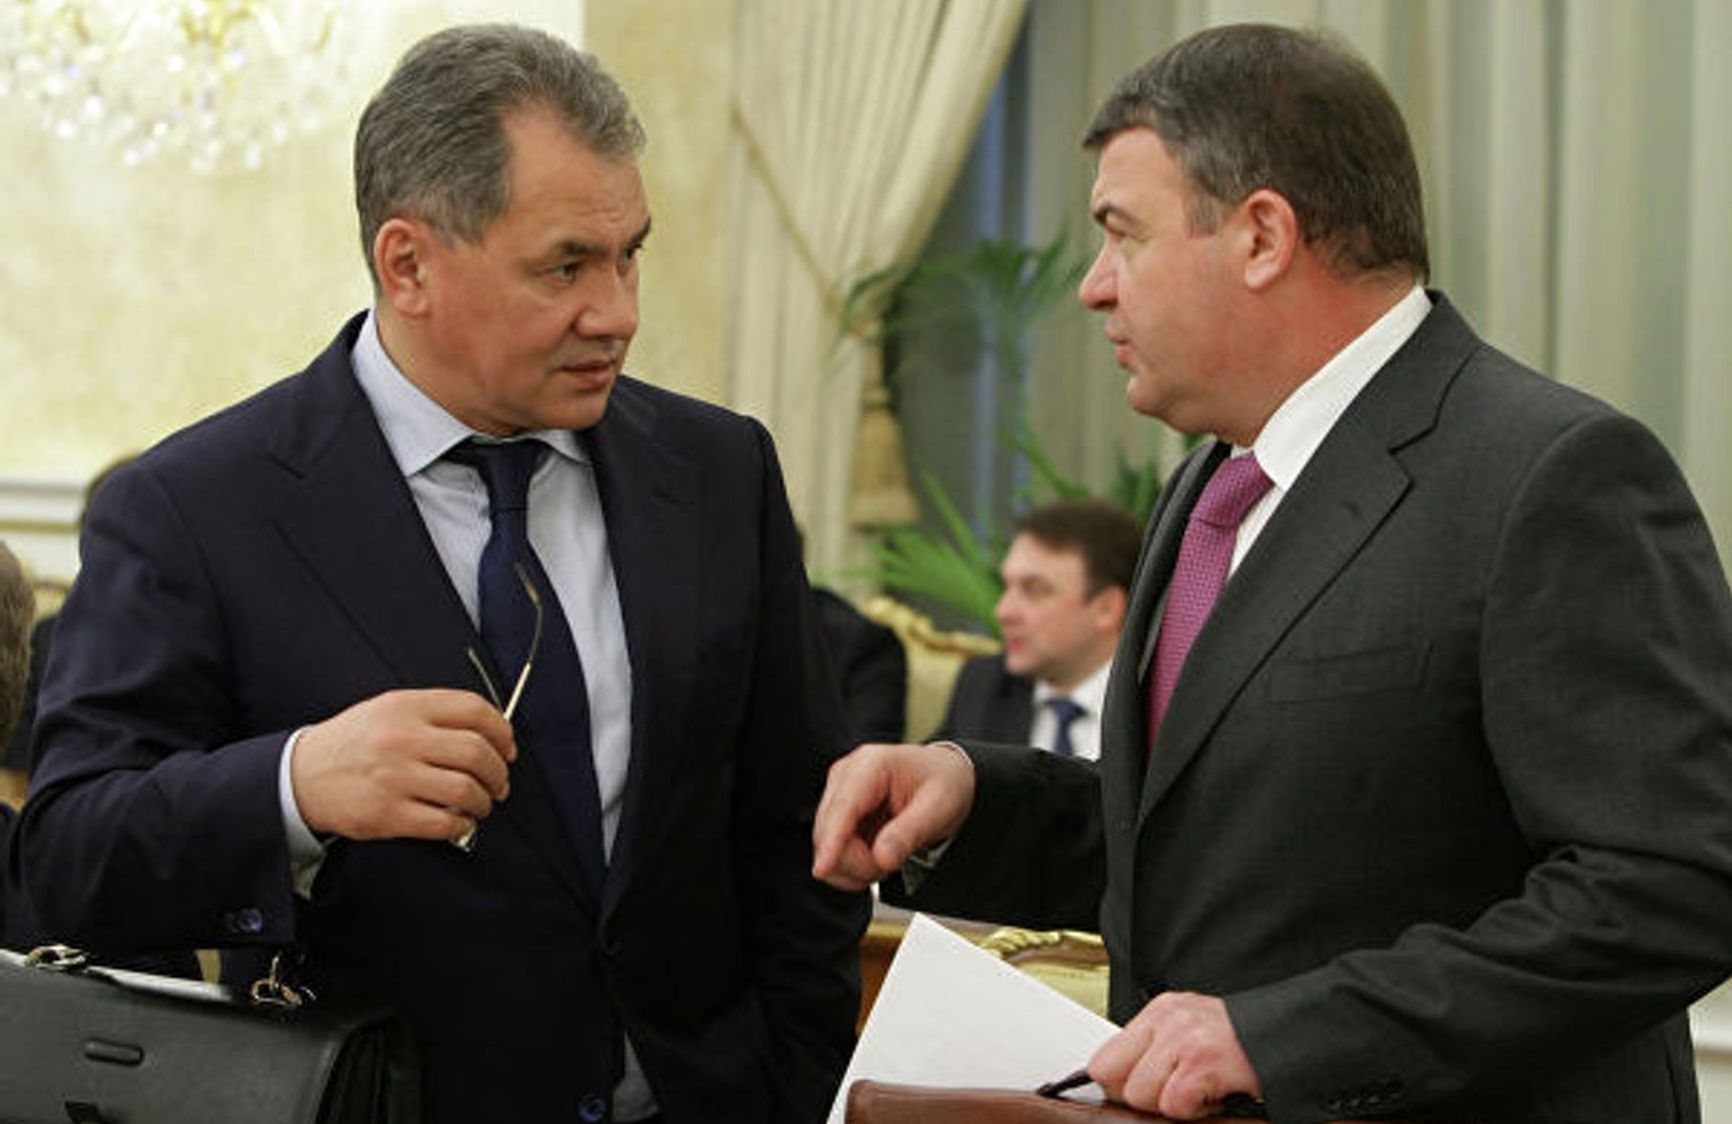 Shoigu followed in Serdyukov's footsteps (photo by A. Nikolsky / RIA Novosti)